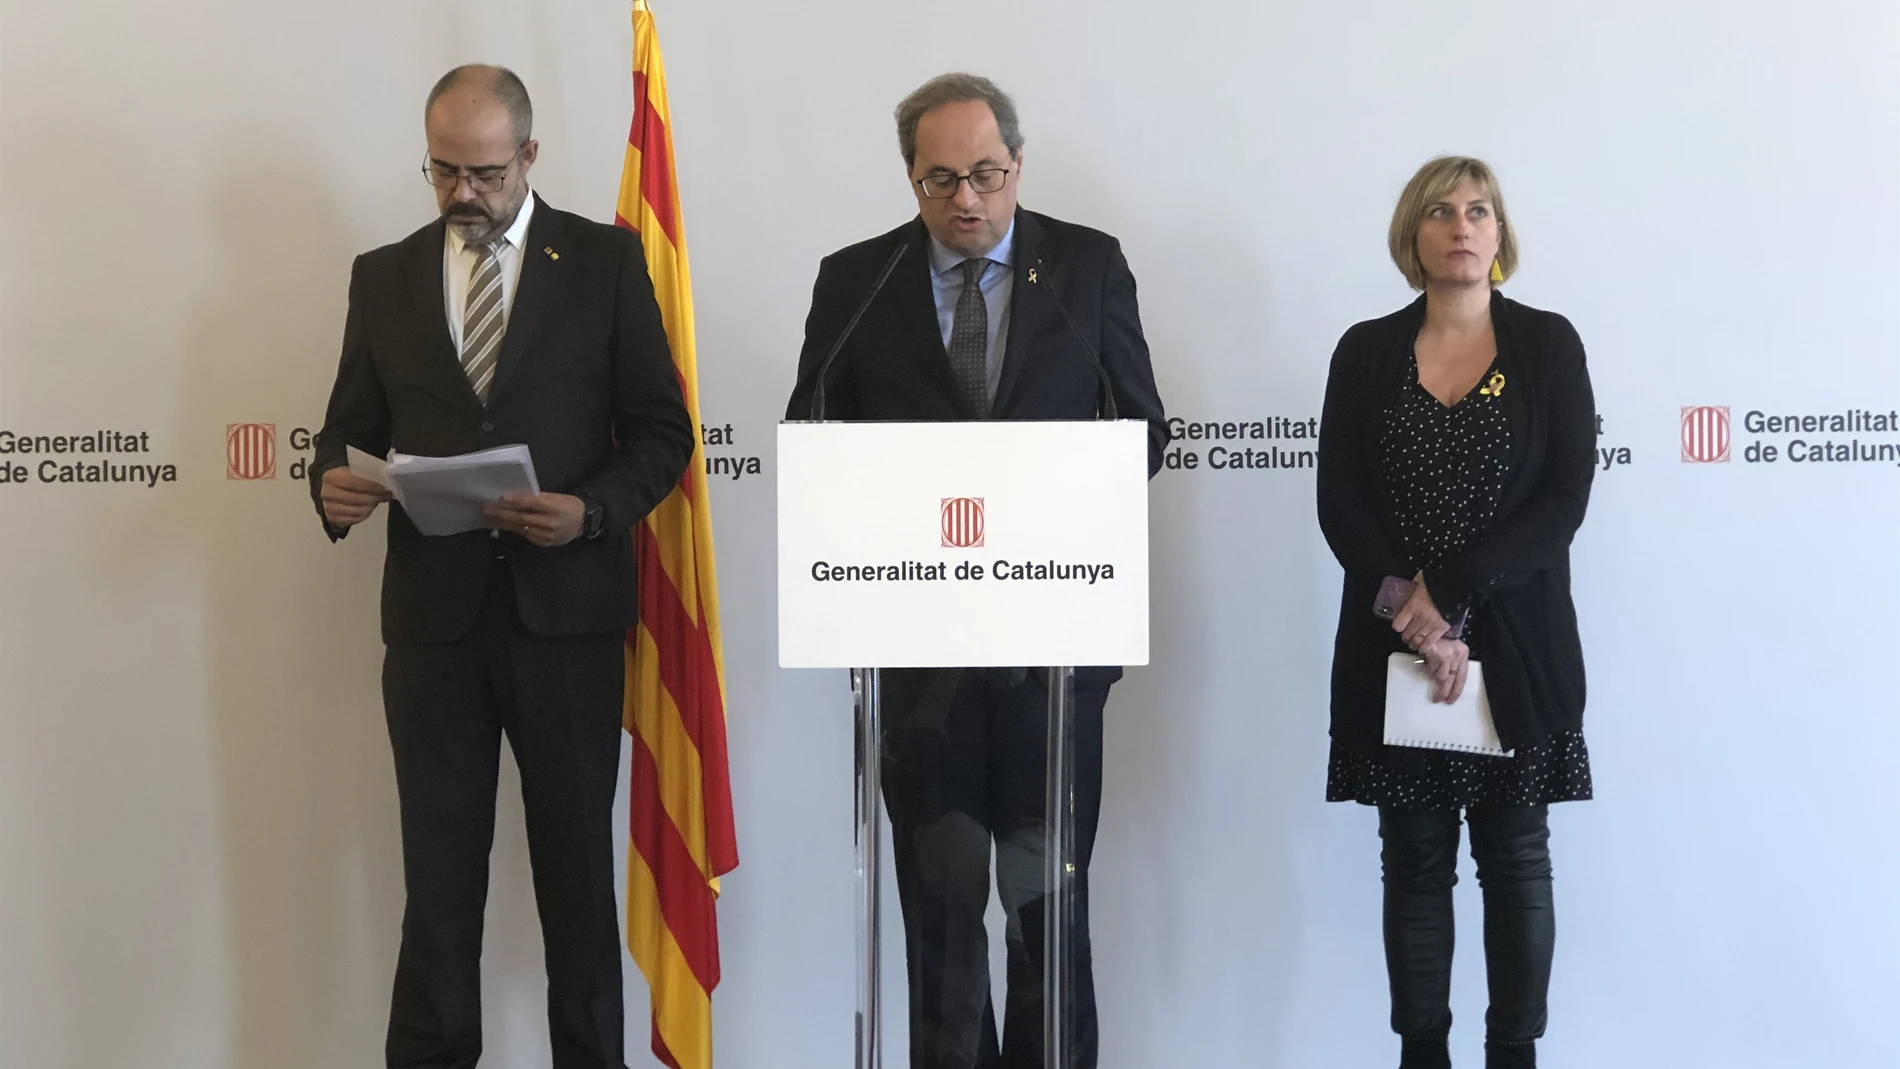 AV.- Coronavirus.- La Generalitat cierra escuelas, institutos y universidades a partir del viernes